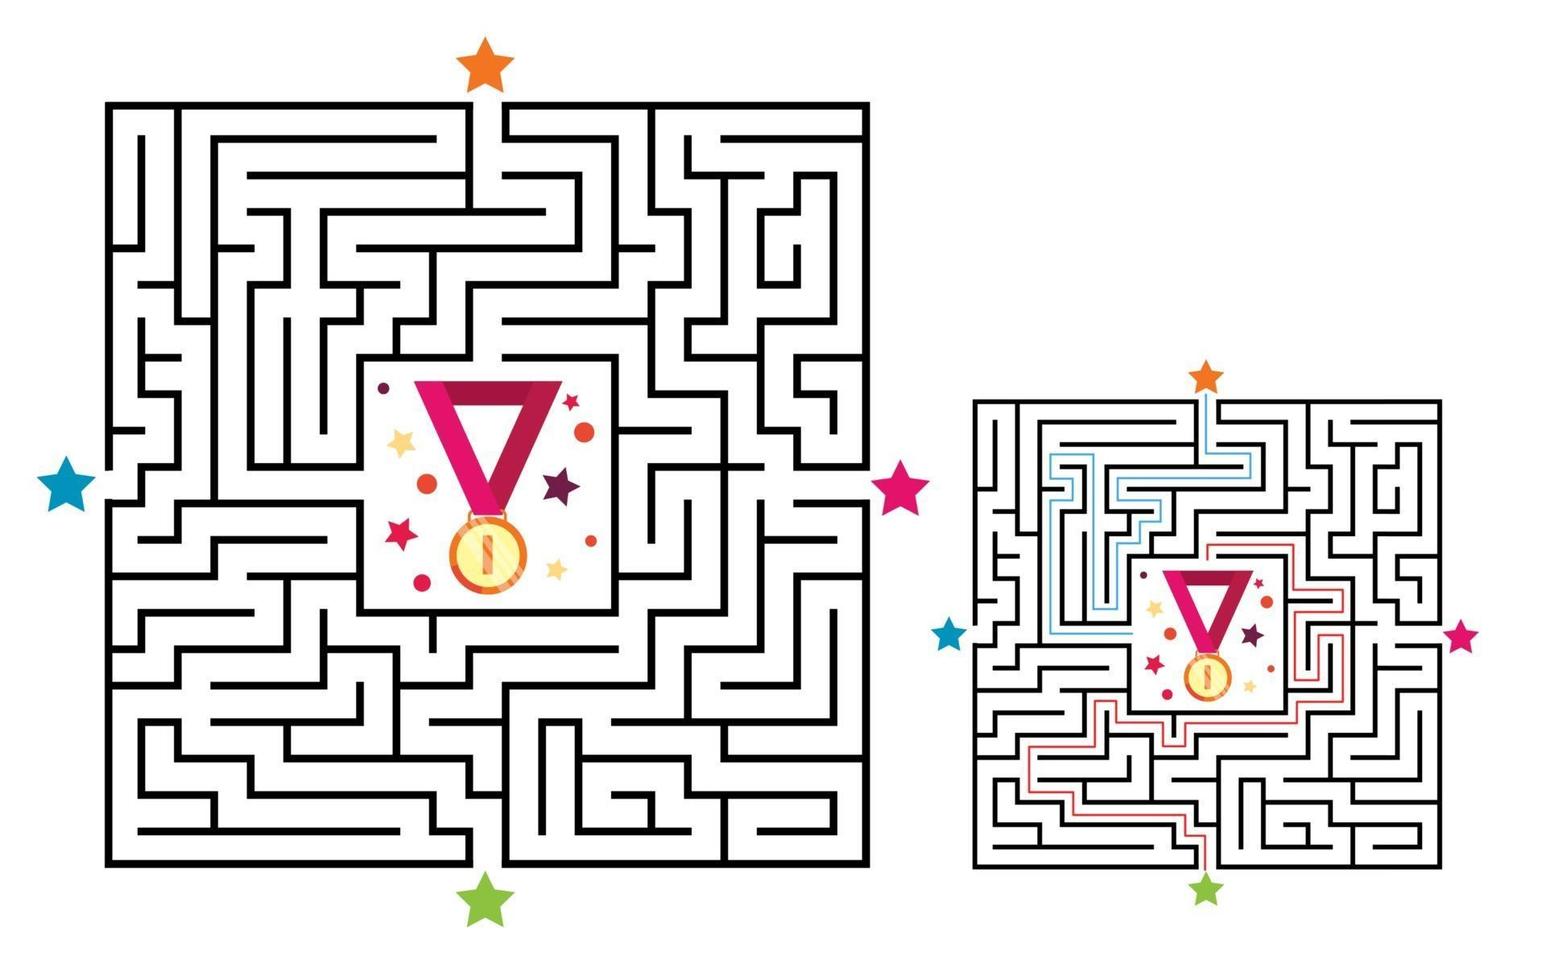 kvadrat labyrint labyrint spel för barn. labyrint logik förvirring vektor